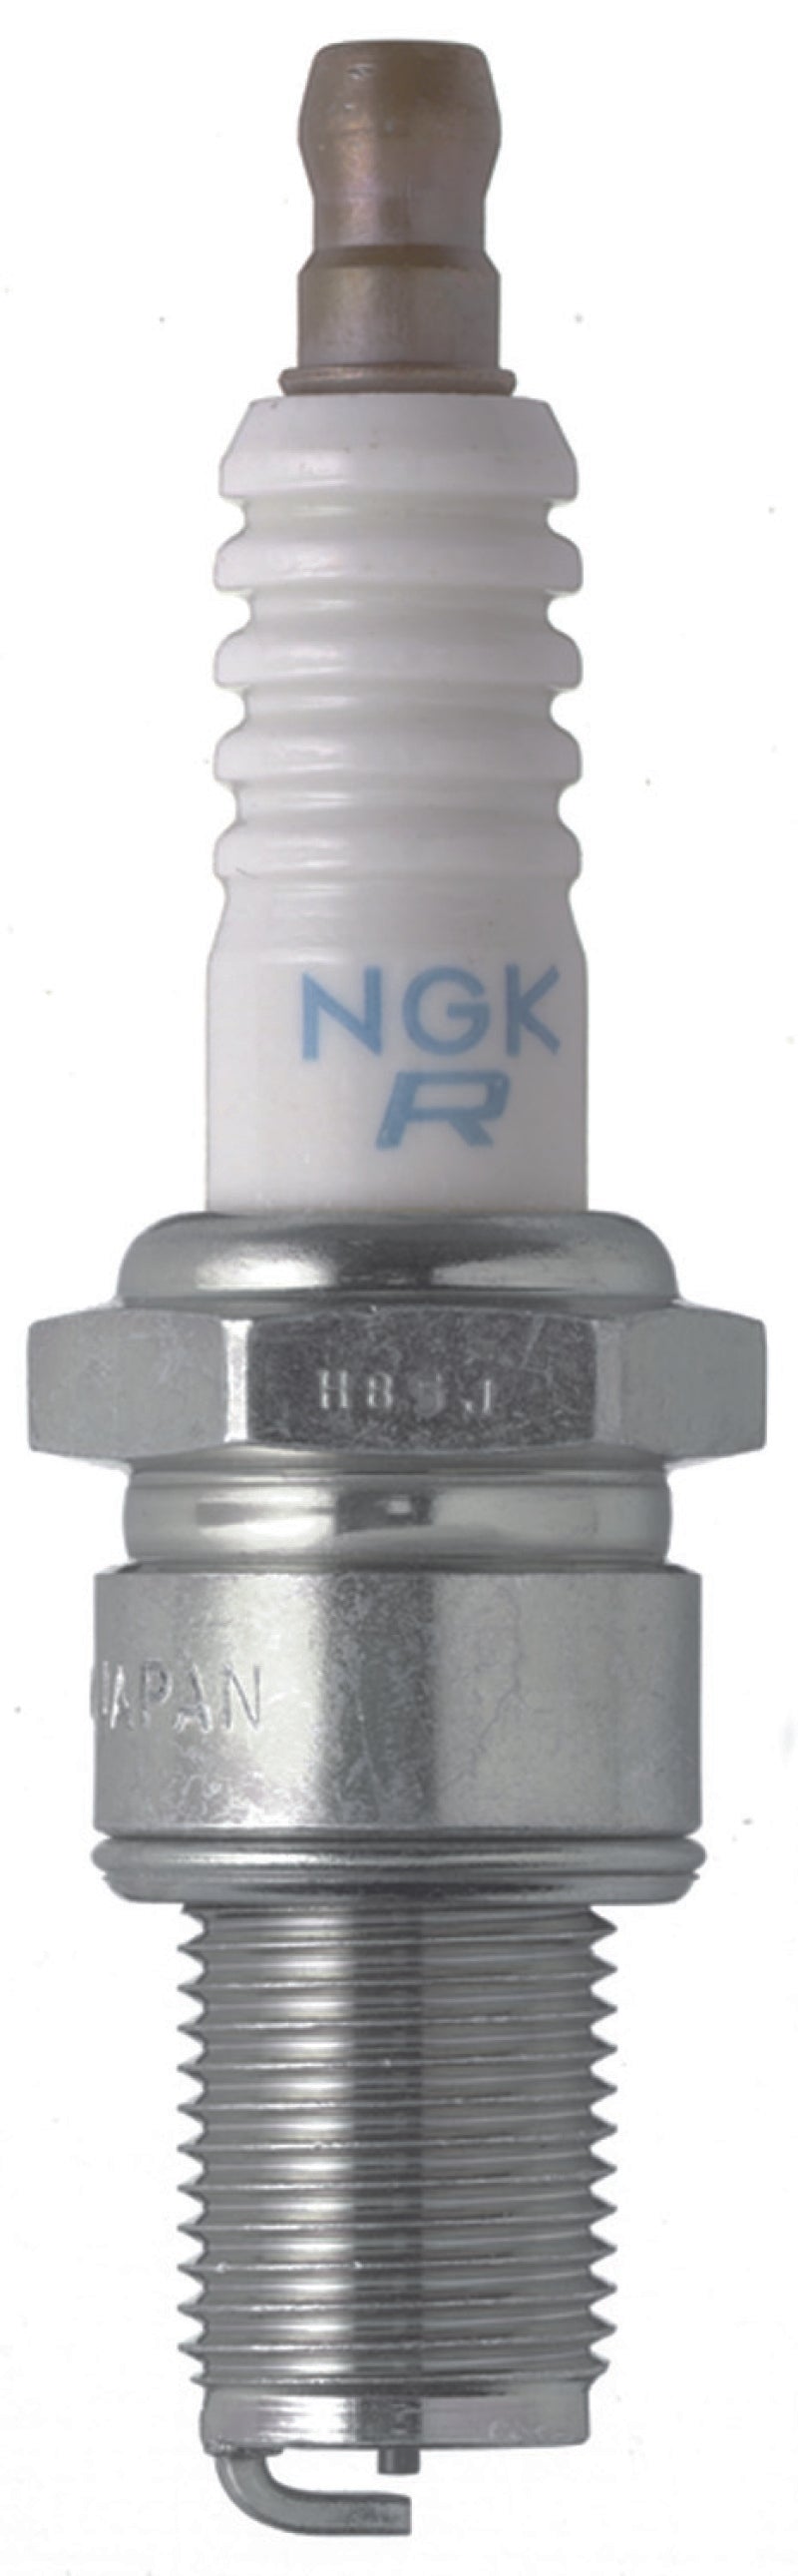 NGK Racing Spark Plug Box of 4 (BR9EG SOLID)